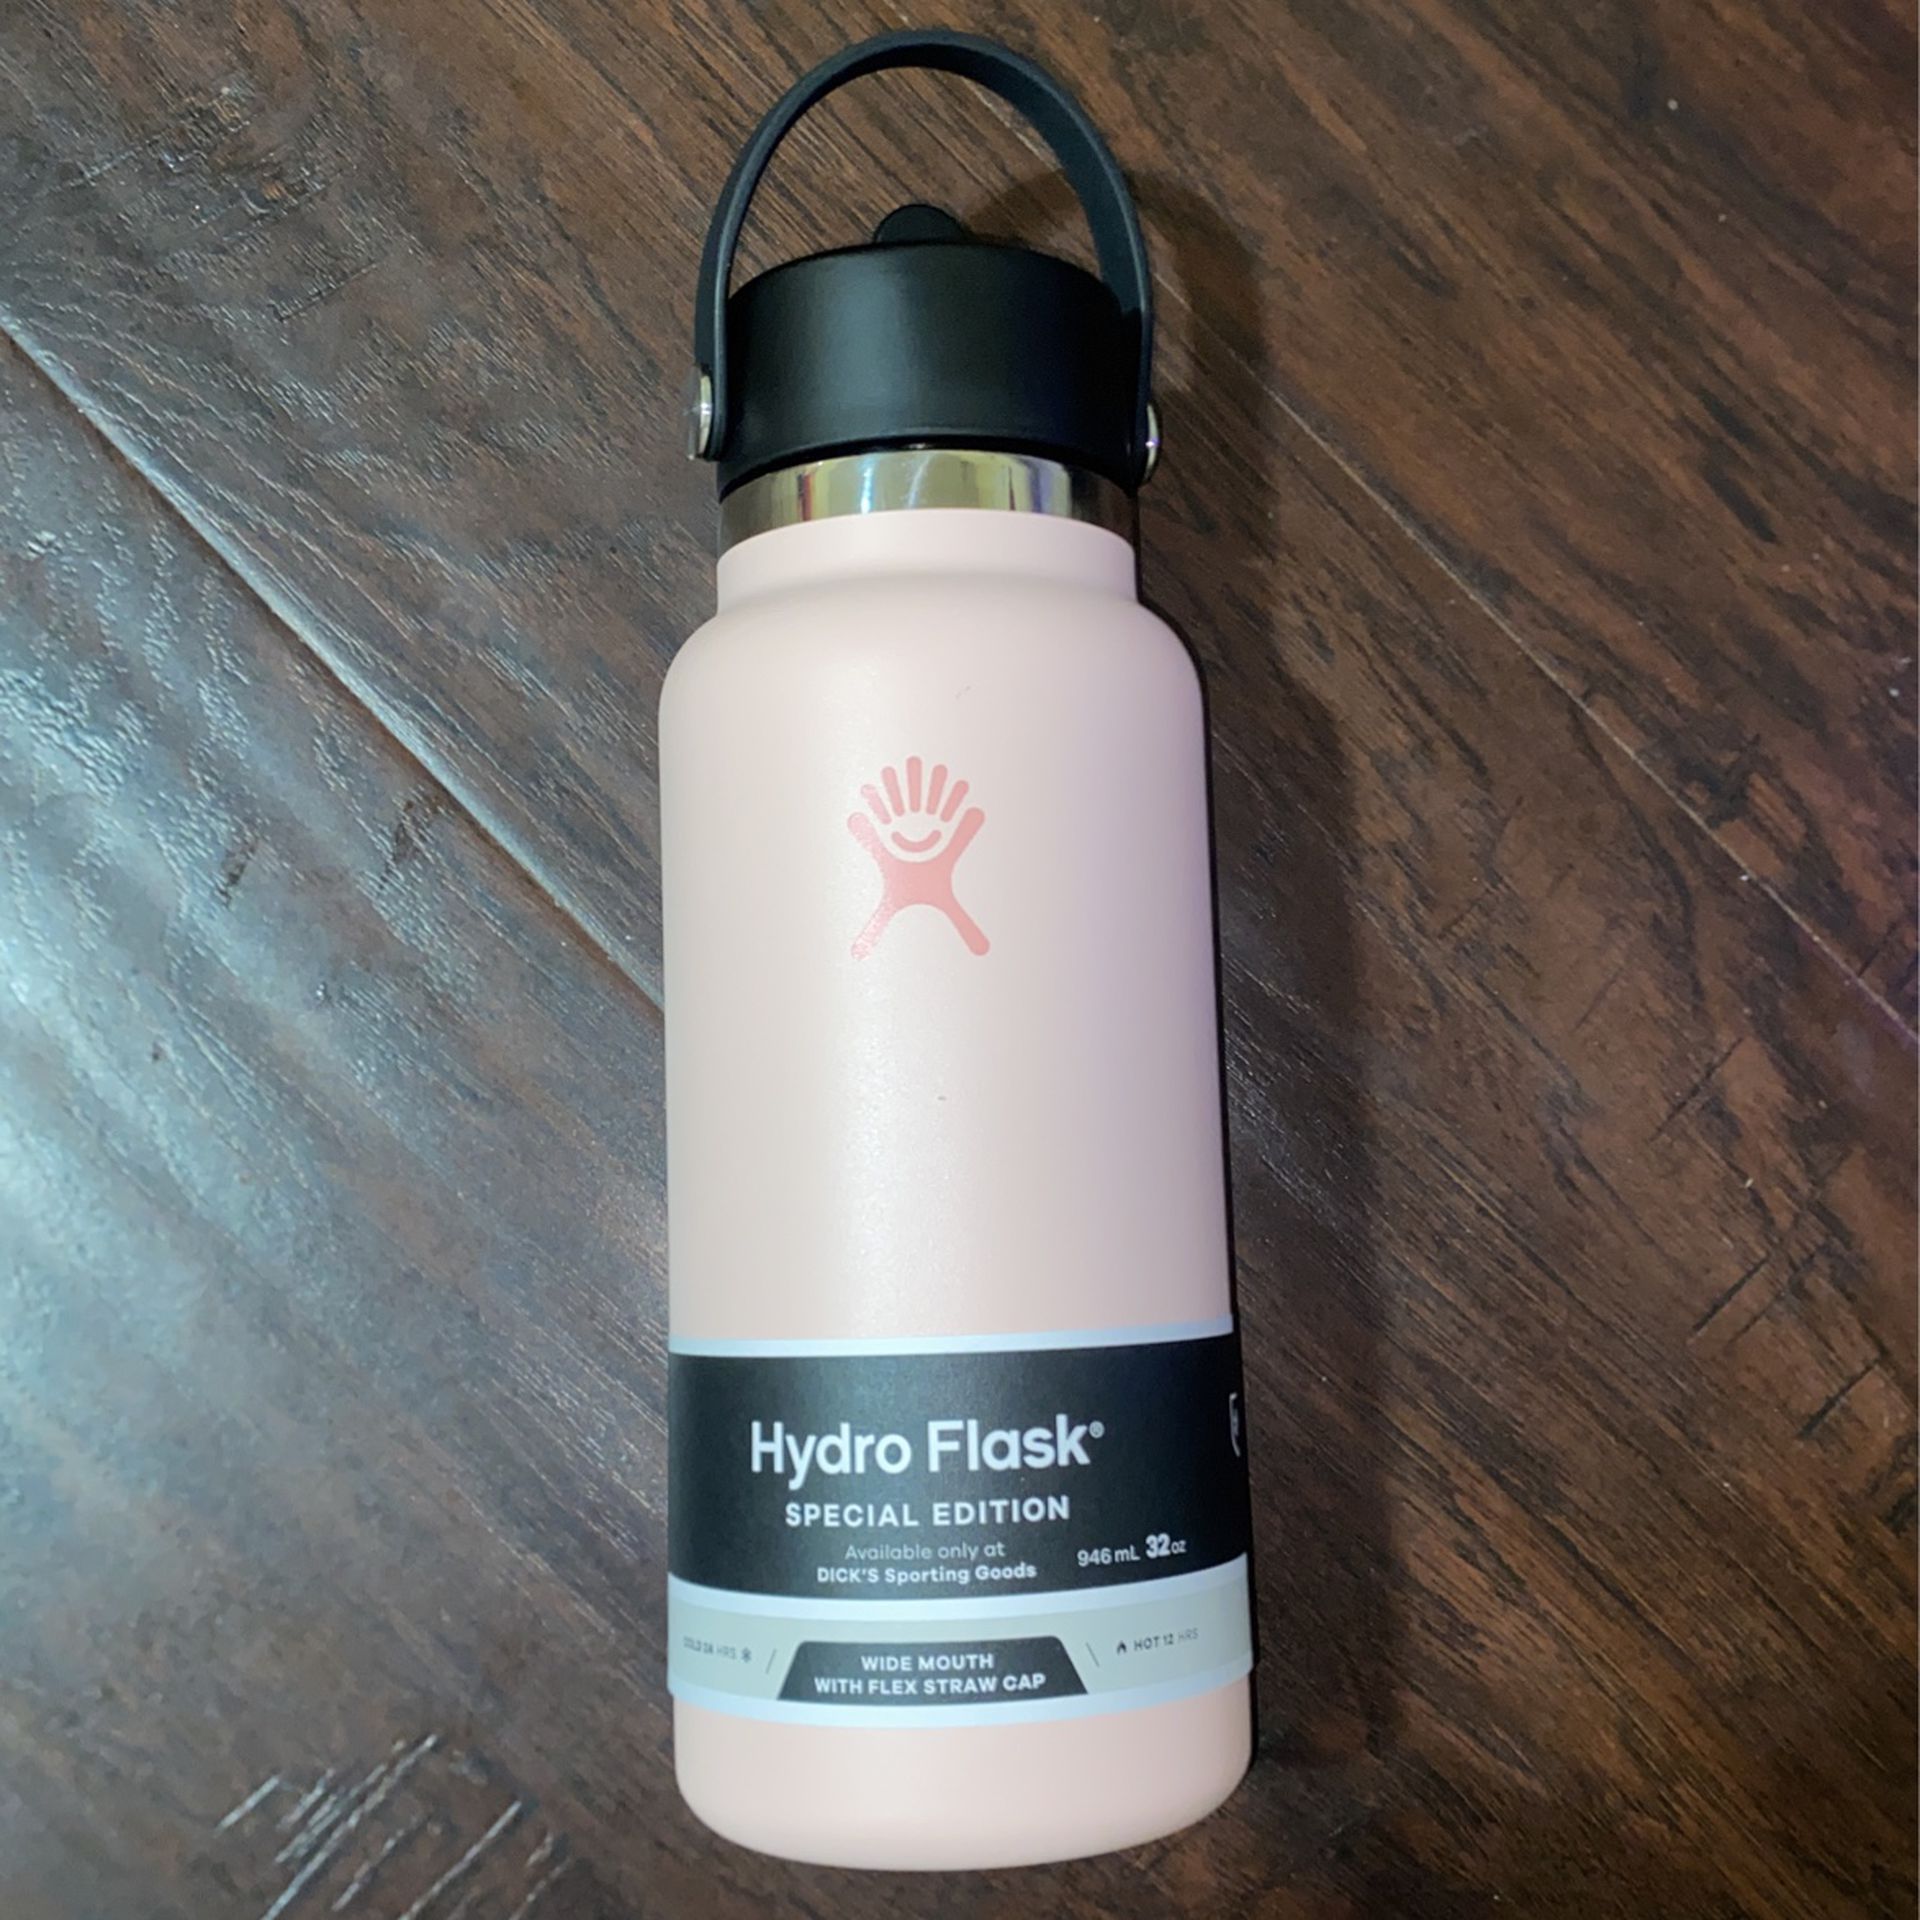 New HydraPeak 32oz Water Bottle Pink for Sale in Yuba City, CA - OfferUp